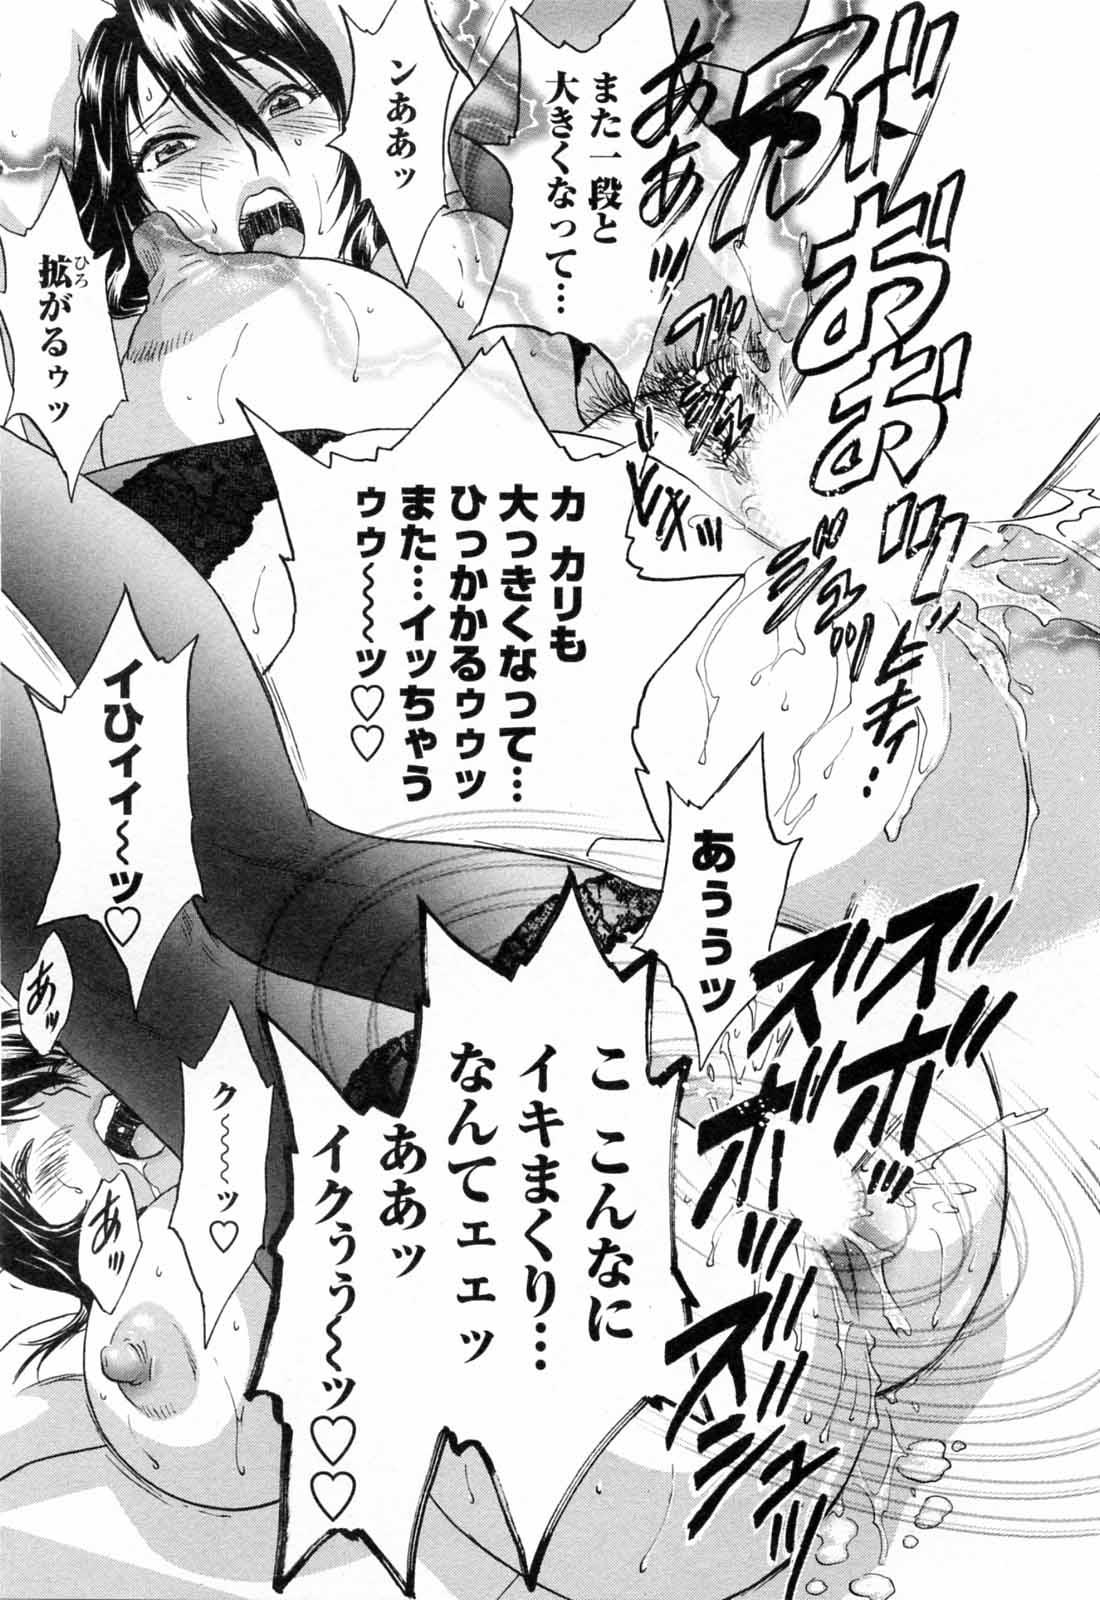 [Hidemaru] Mo-Retsu! Boin Sensei (Boing Boing Teacher) Vol.5 28